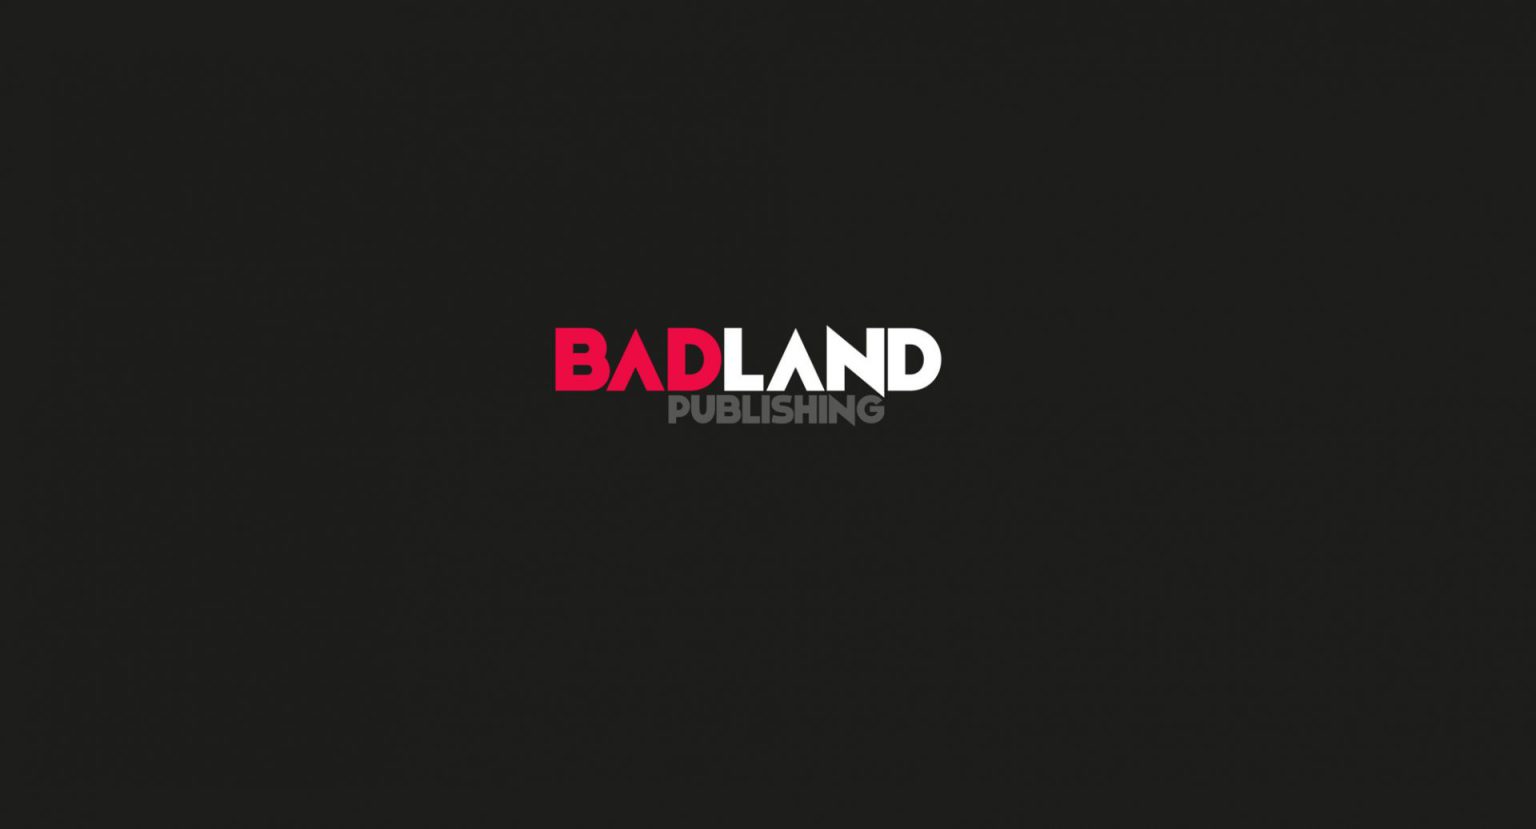 Badland Publishing